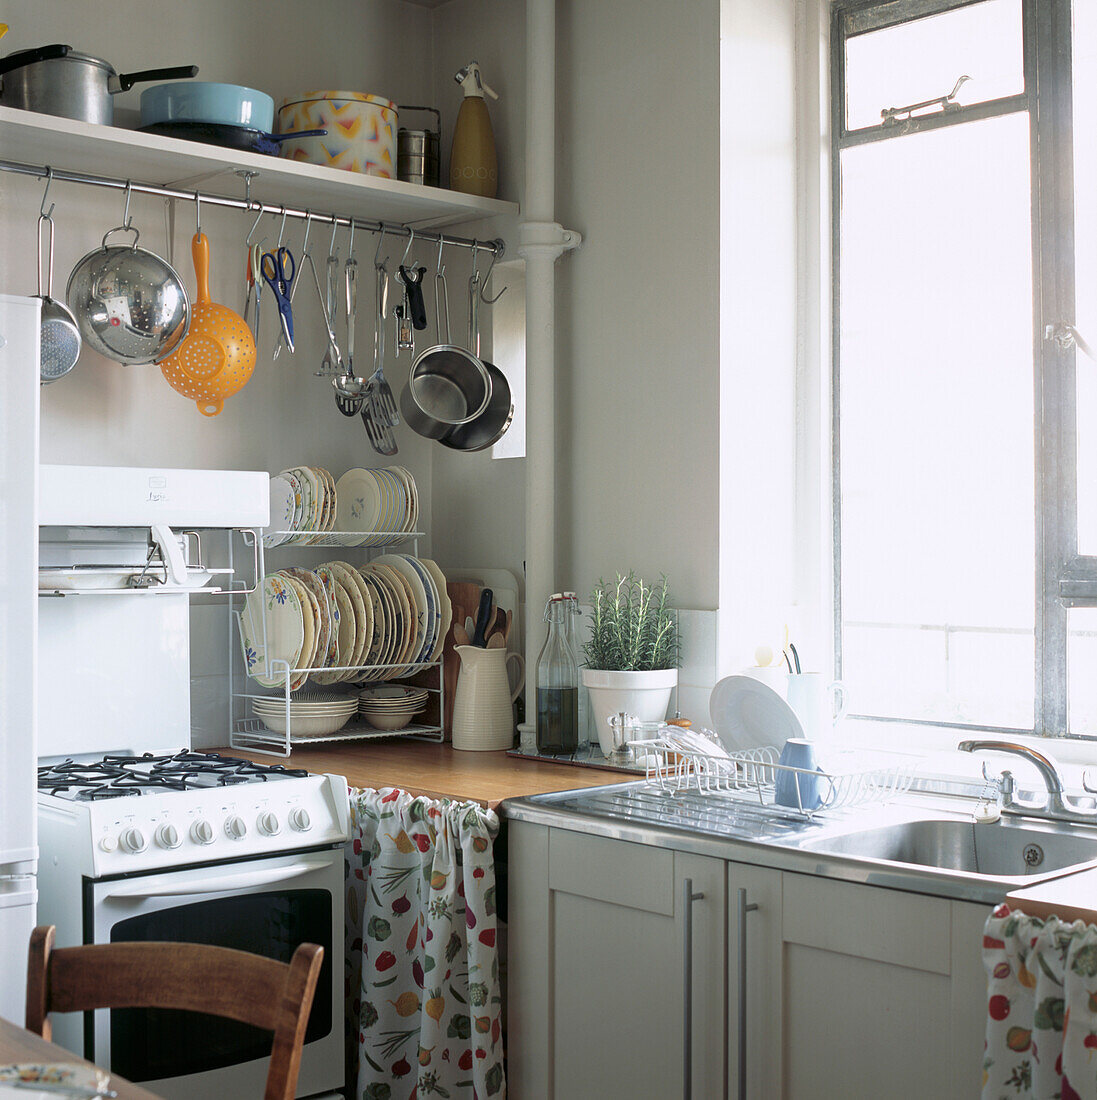 Einfache weiße Küche mit Ikea-Schränken und Hängeschiene mit Töpfen und Pfannen